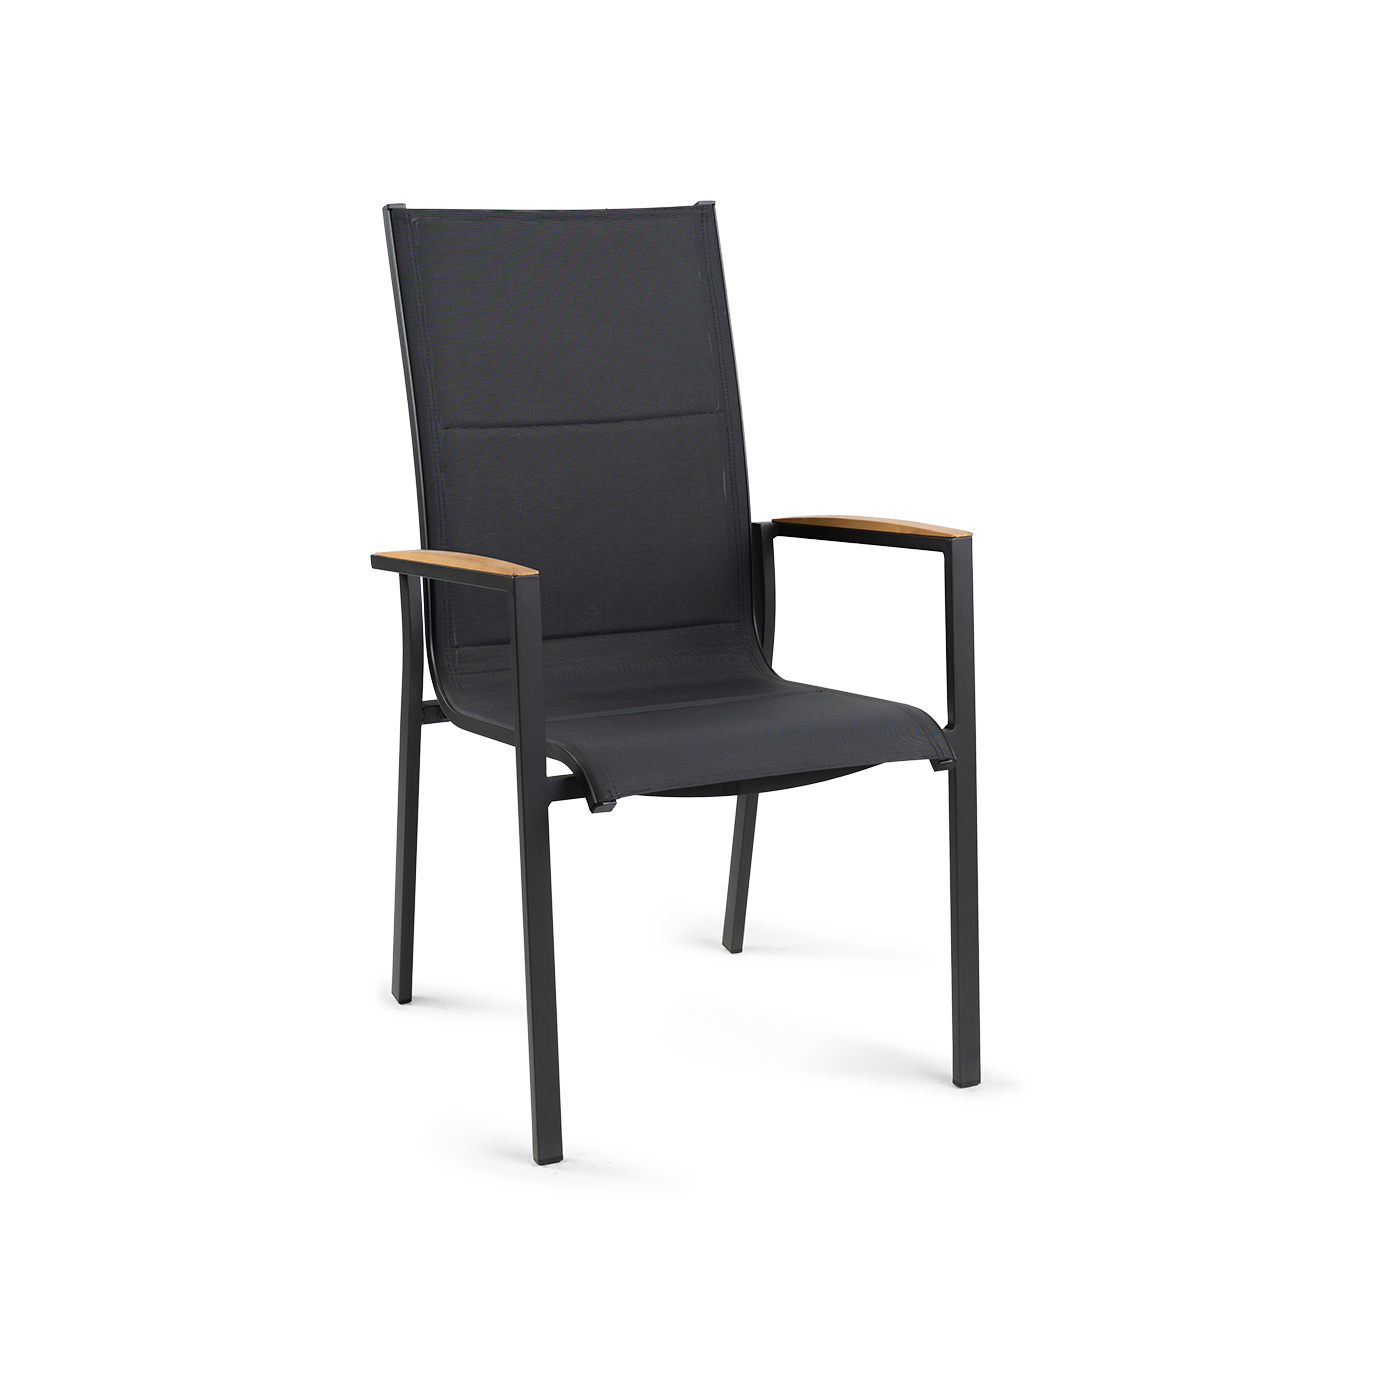 Foxx Teak High Back Stackable Chair Charcoal